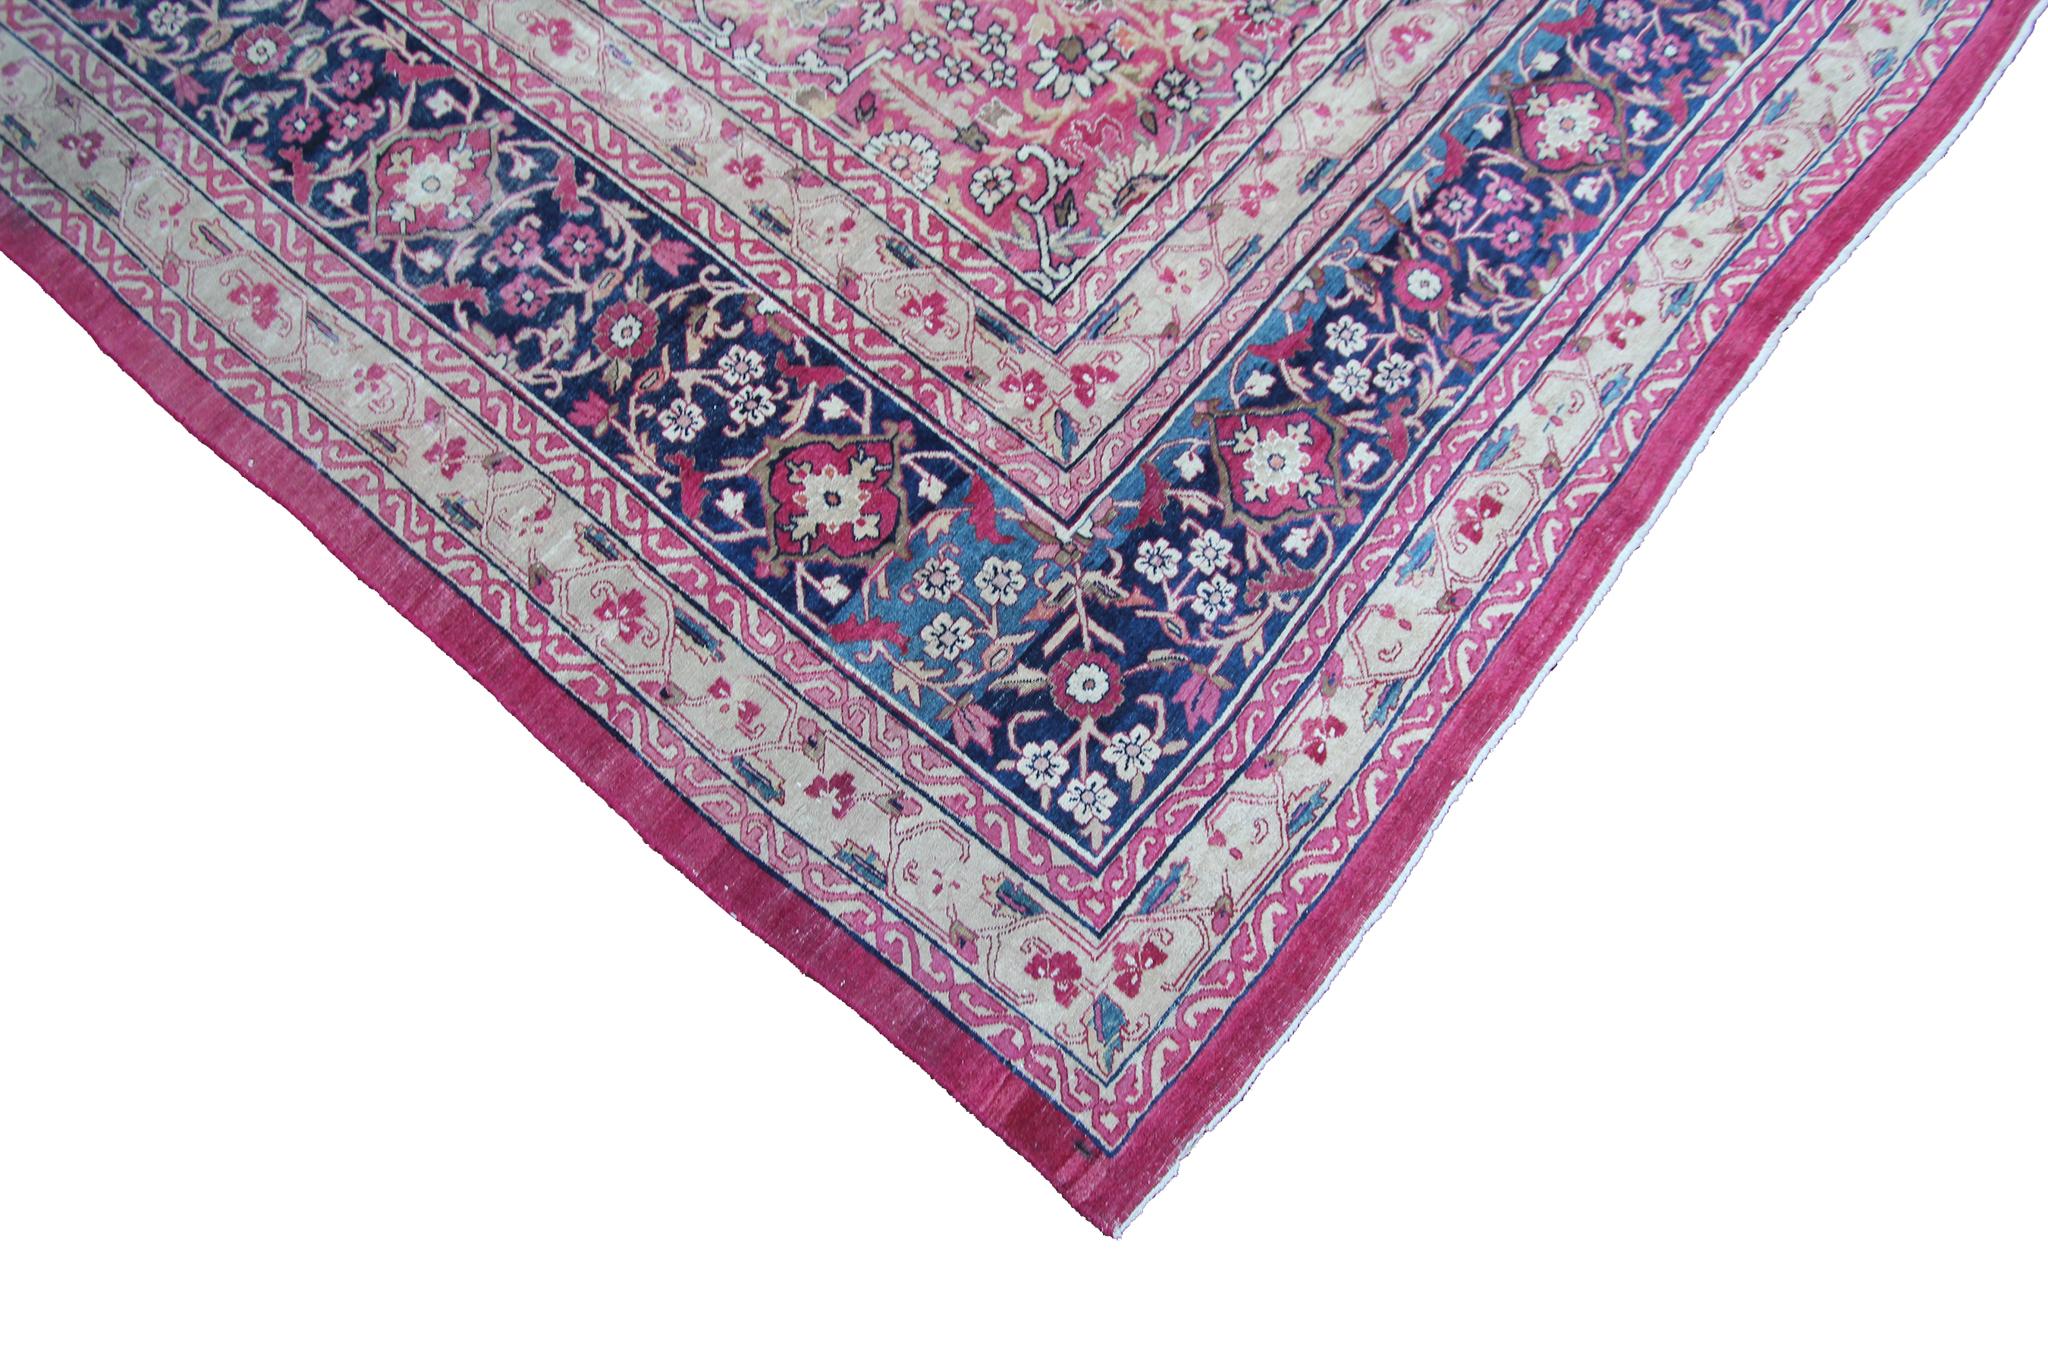 c1870 Pink Antique Lavar Kermanshah Fine Geometric Rug 11x17ft 138cm x 519cm For Sale 5